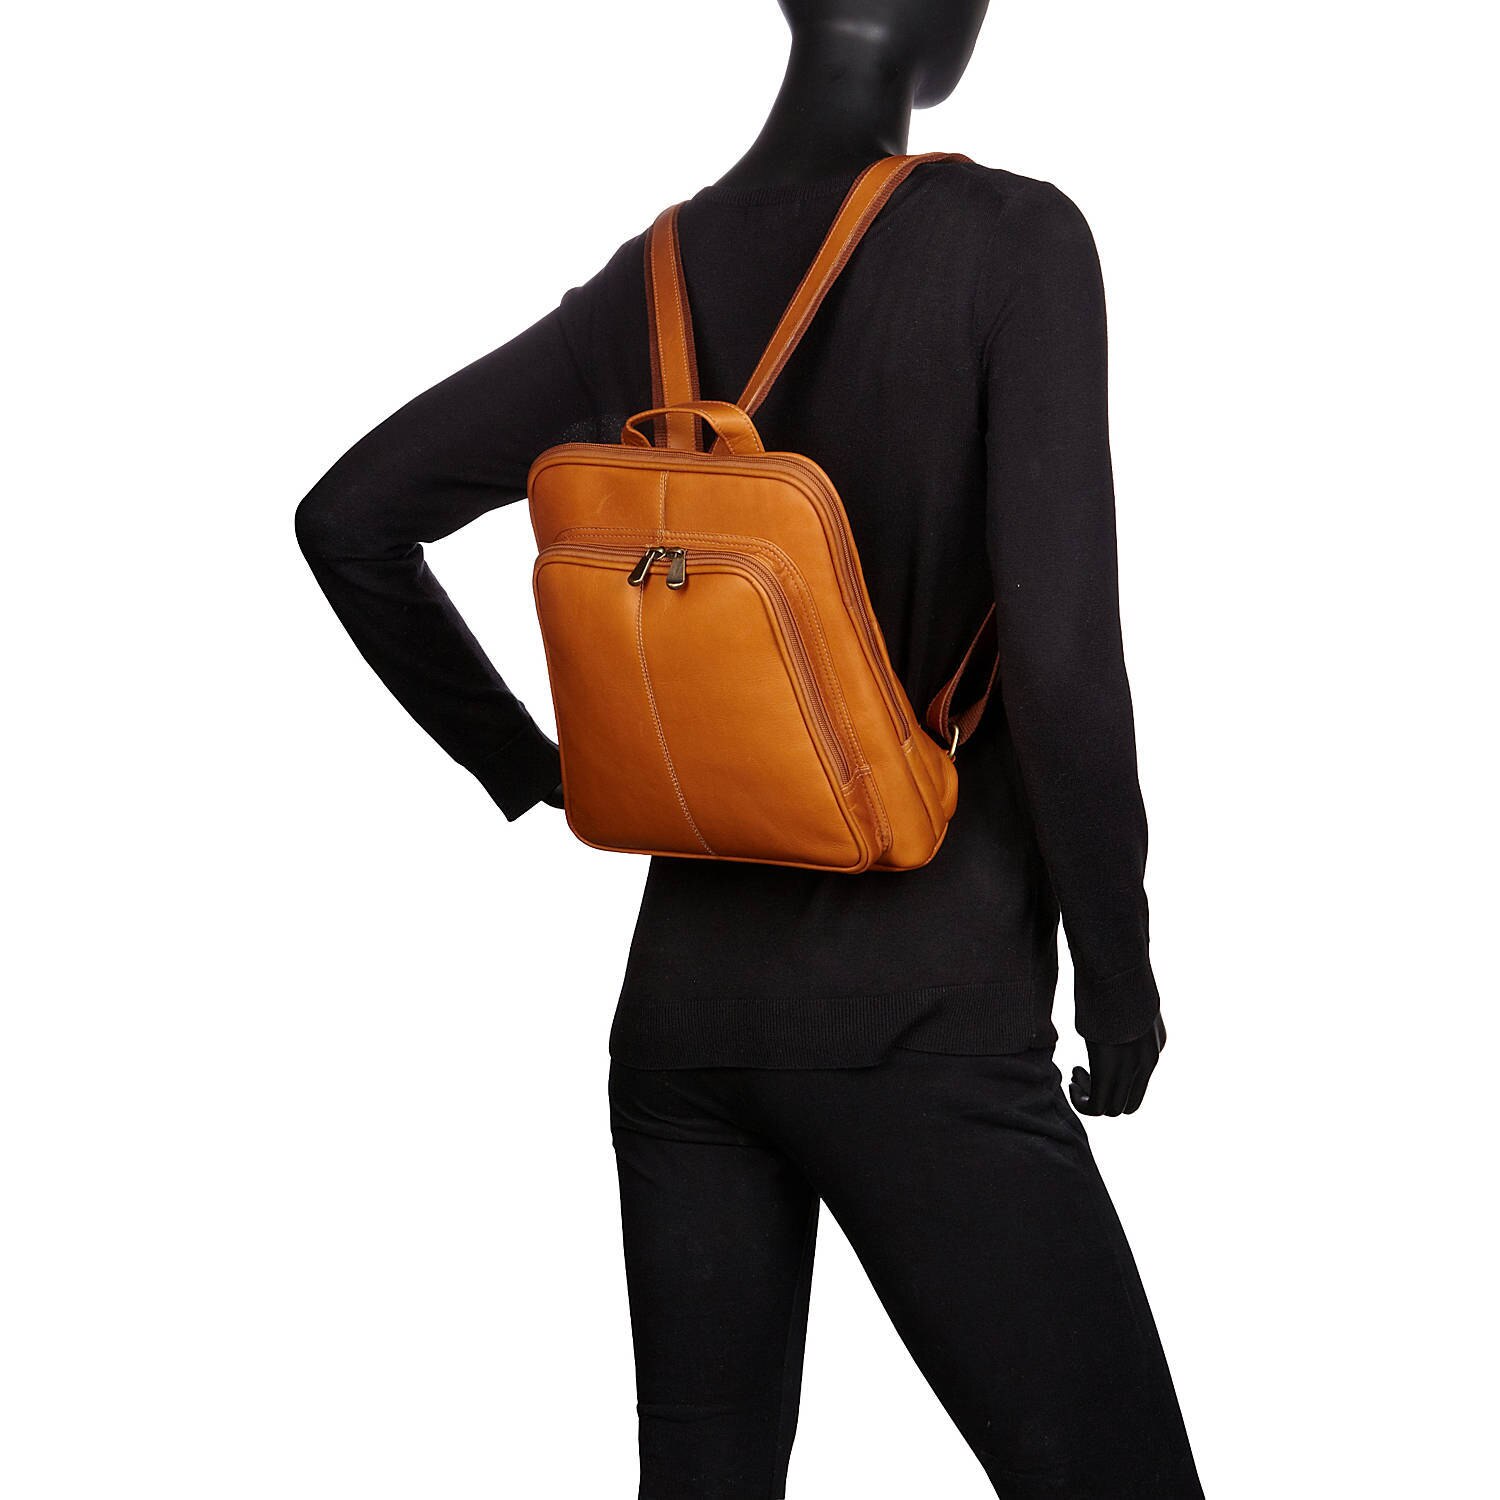 Le Donne Leather Nokota Backpack LD-8064 - image 4 of 4